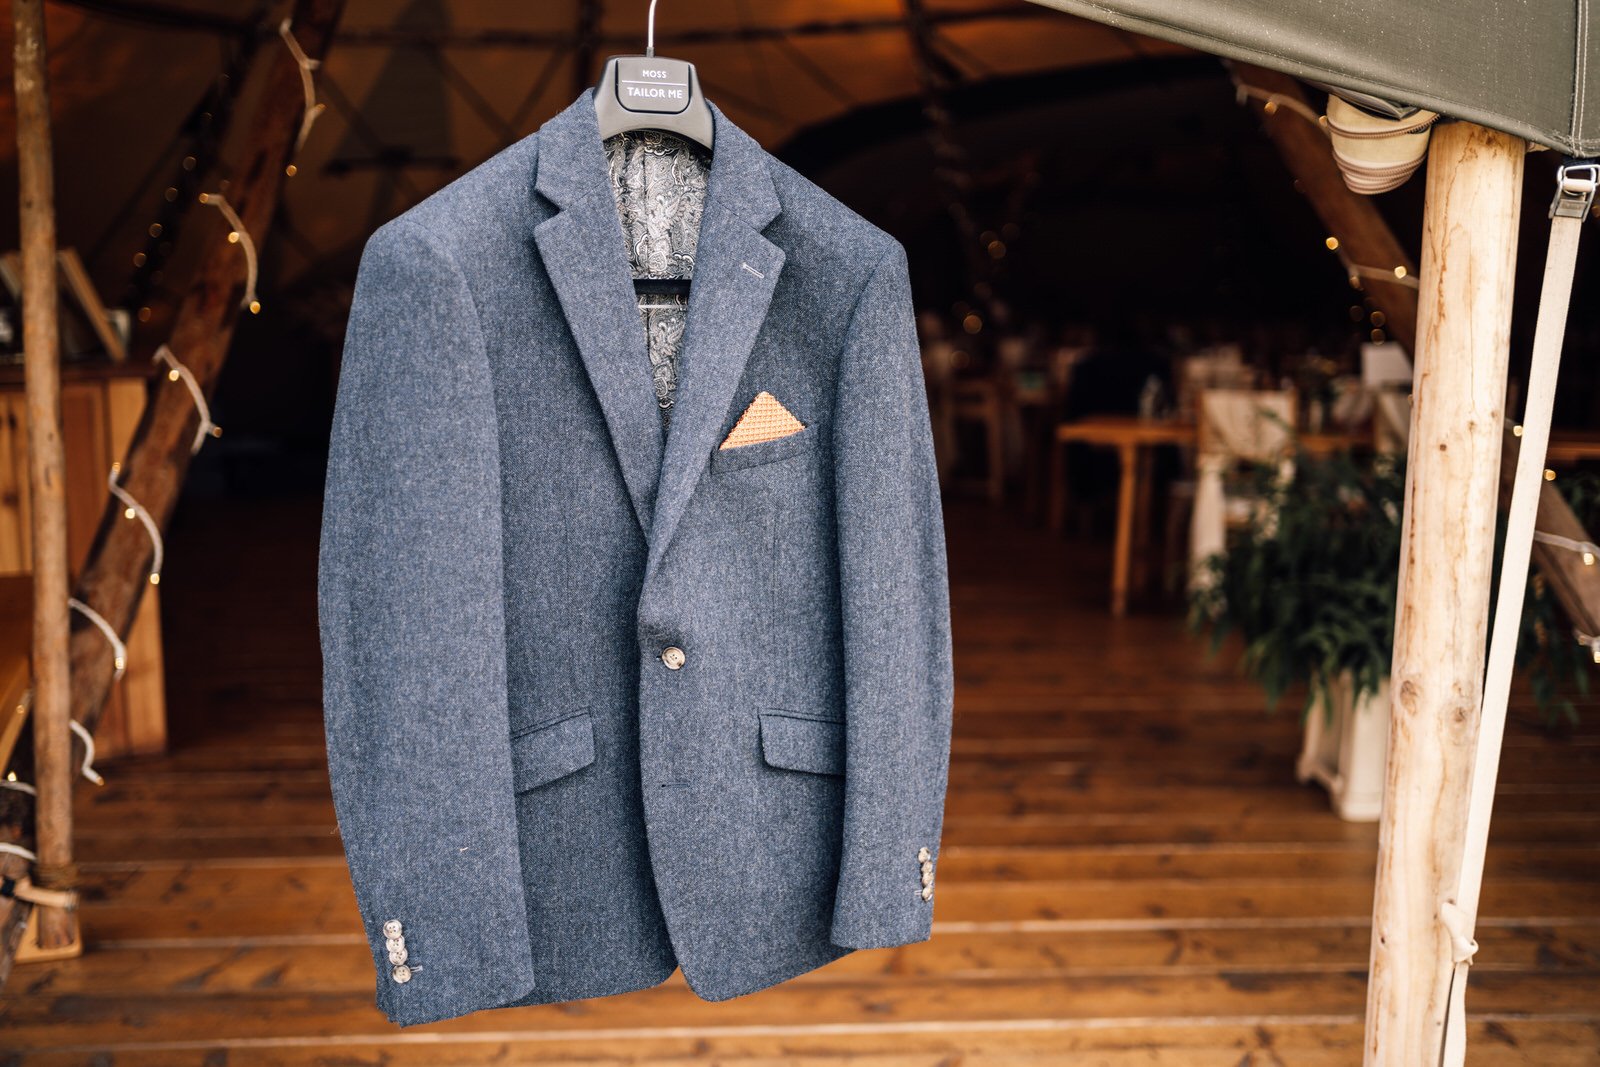 groom suit details at hidden hive wedding venue